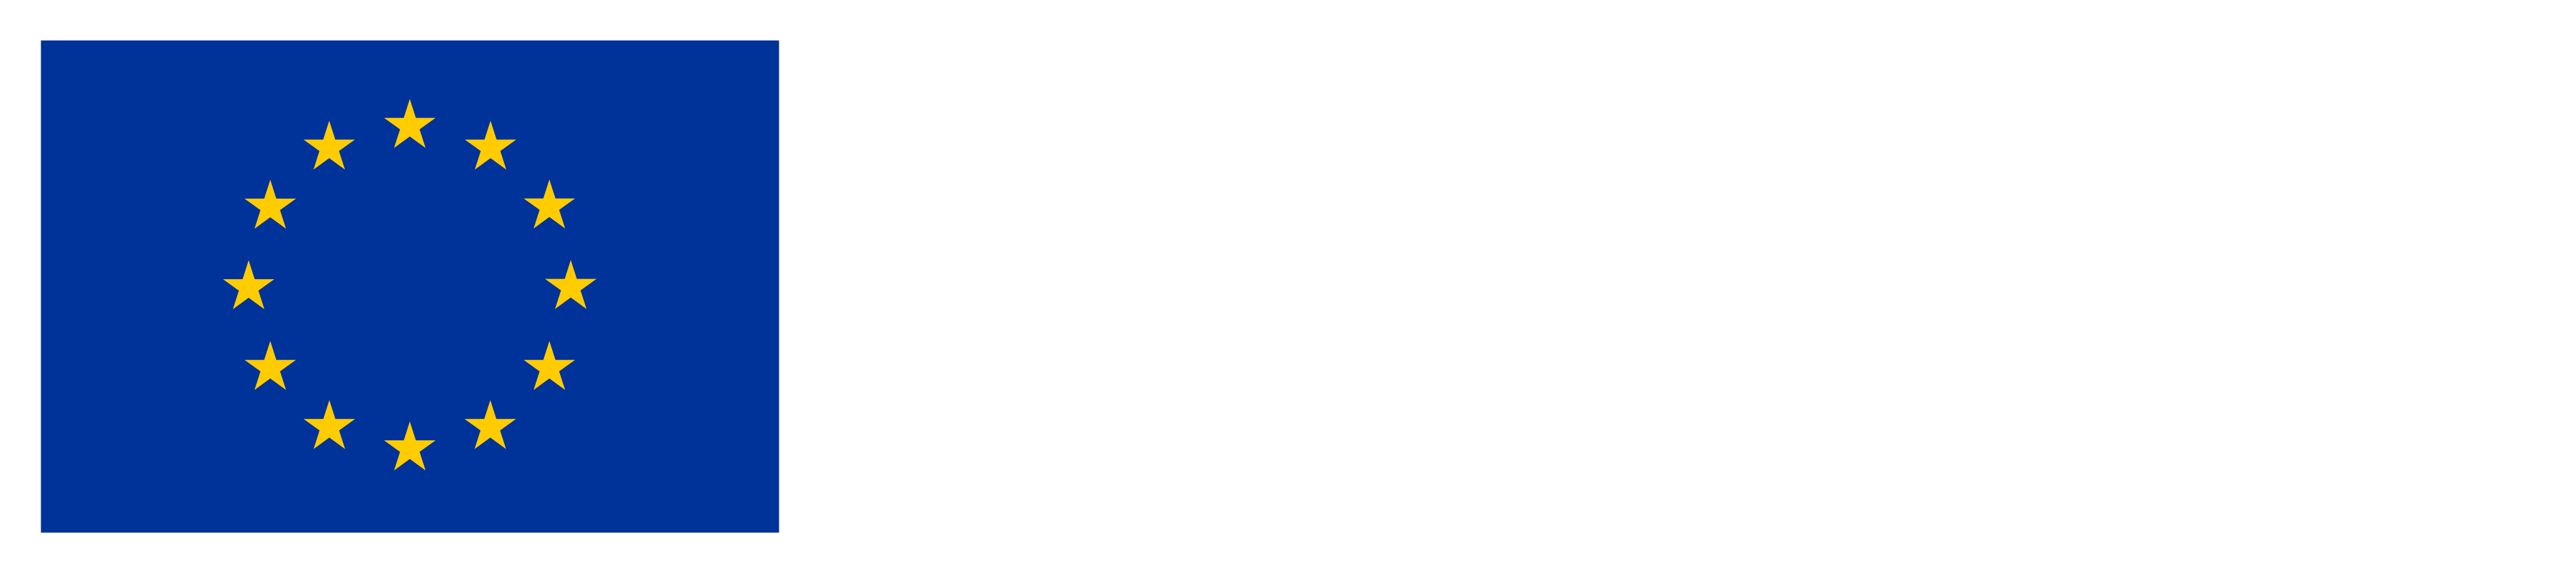 Financiado por la Unión Europe Next Generation EU